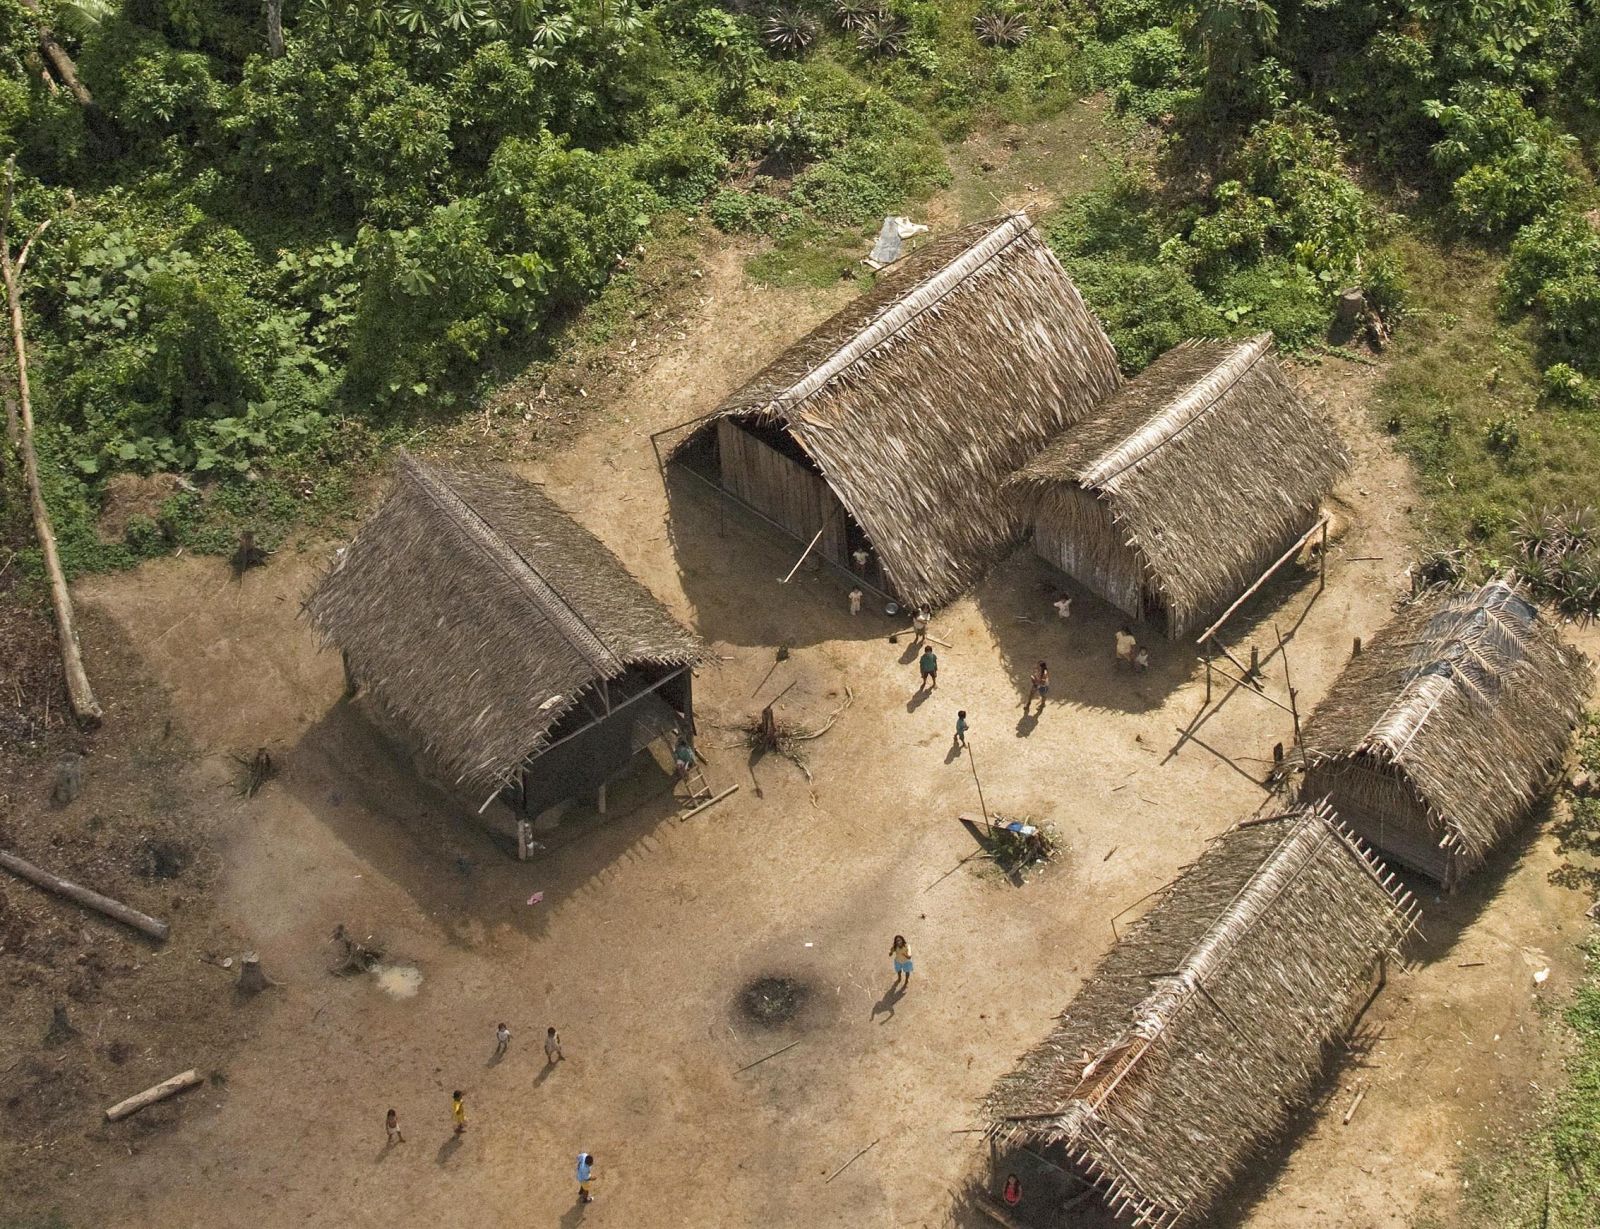 Huts of Huaorani people in Ecuador.